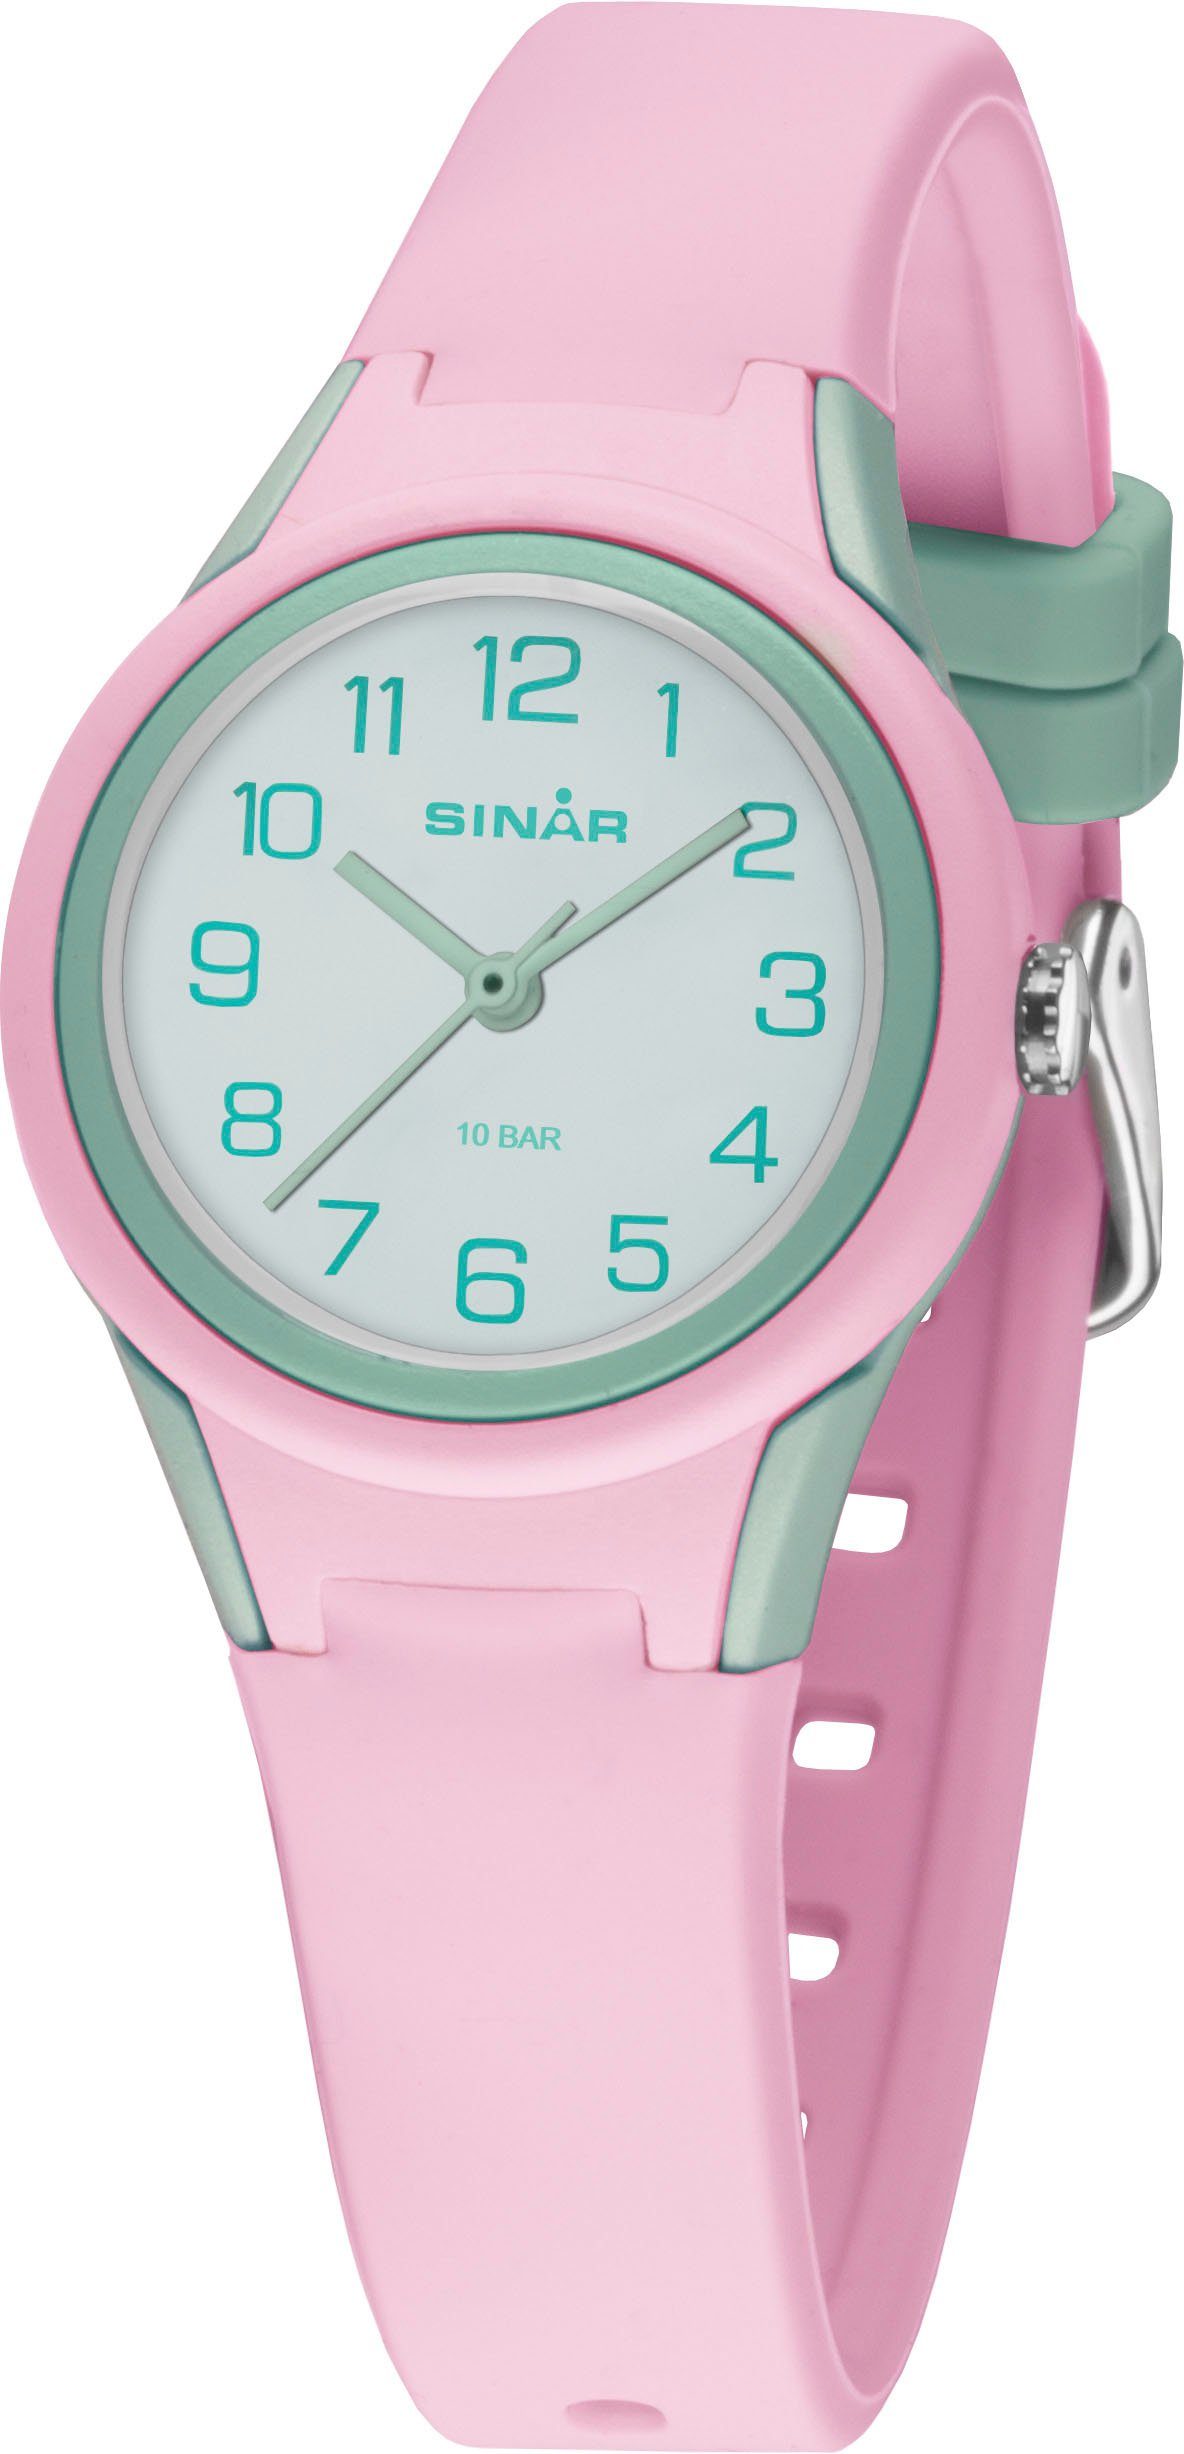 SINAR Quarzuhr XB-47-9, Armbanduhr, Kinderuhr, Mädchenuhr, ideal auch als Geschenk